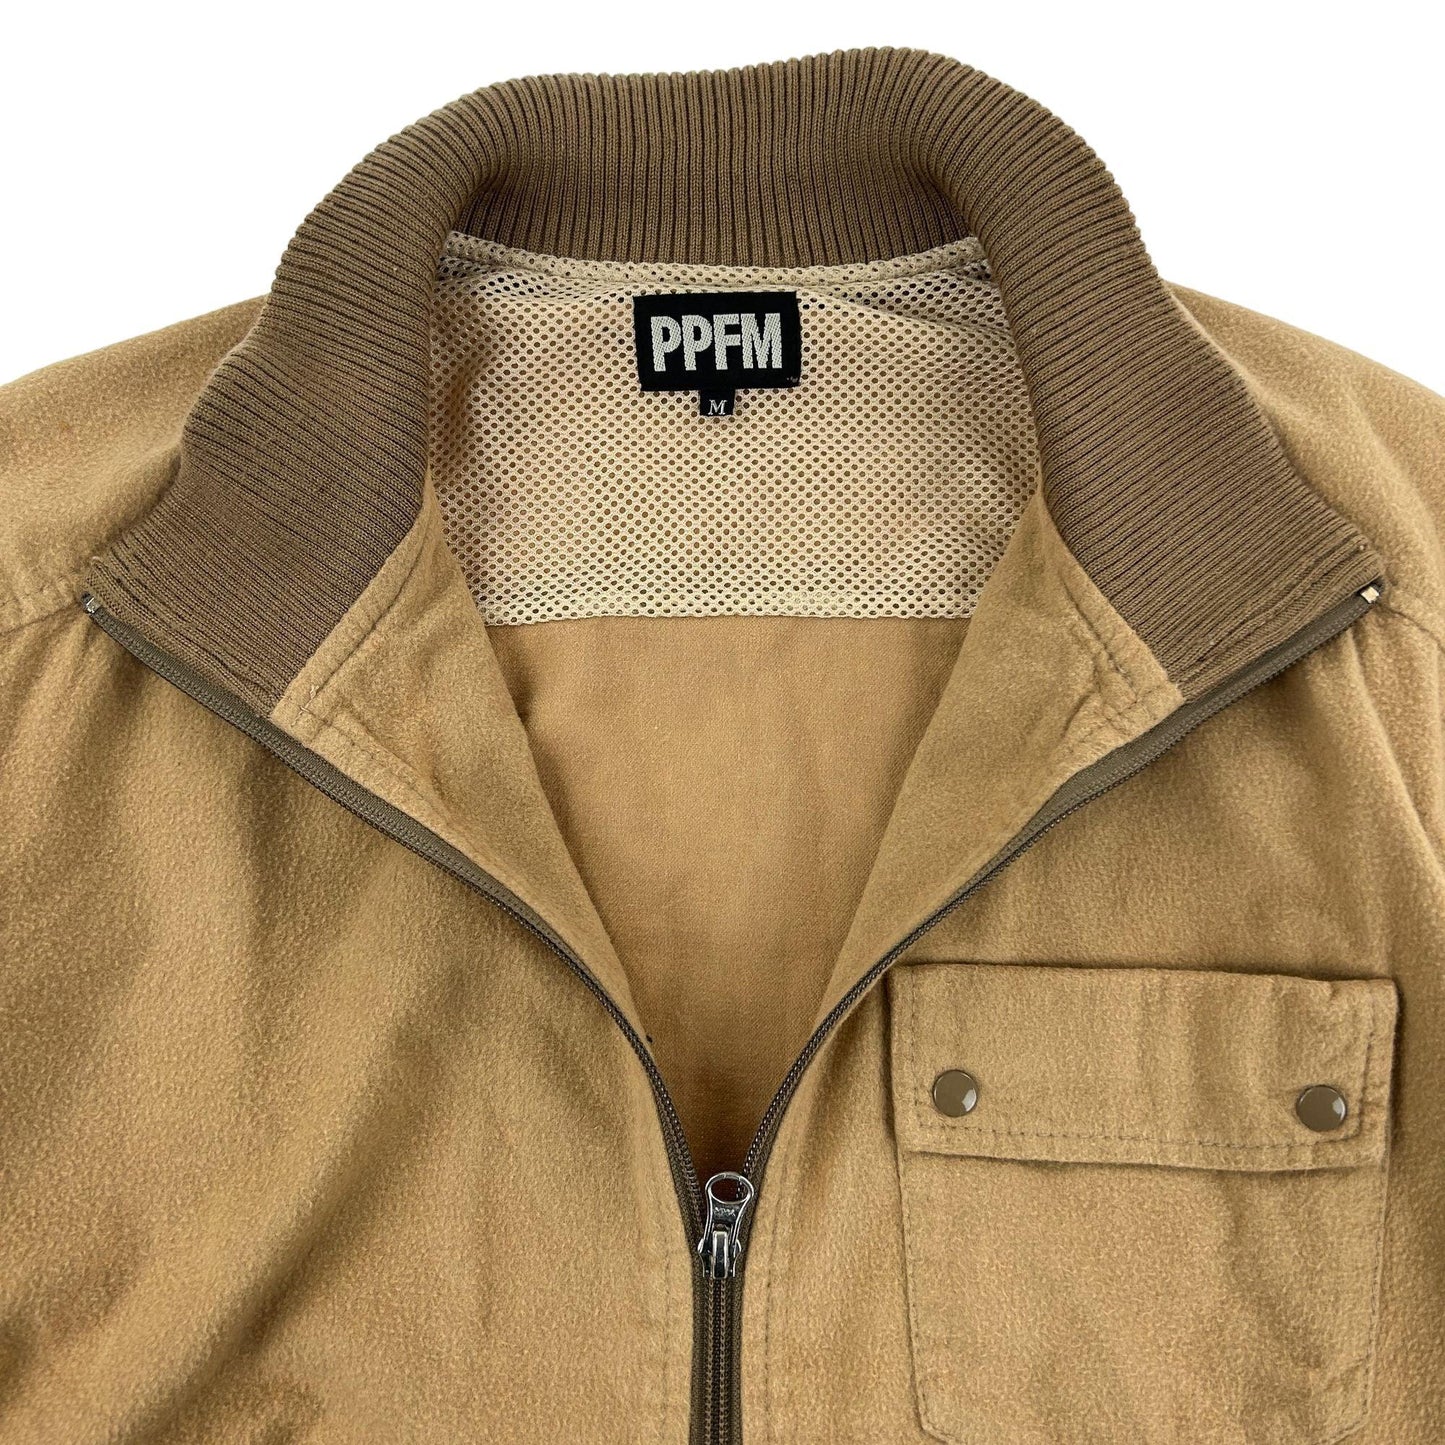 Vintage PPFM Zip Up Jacket Size M - Known Source